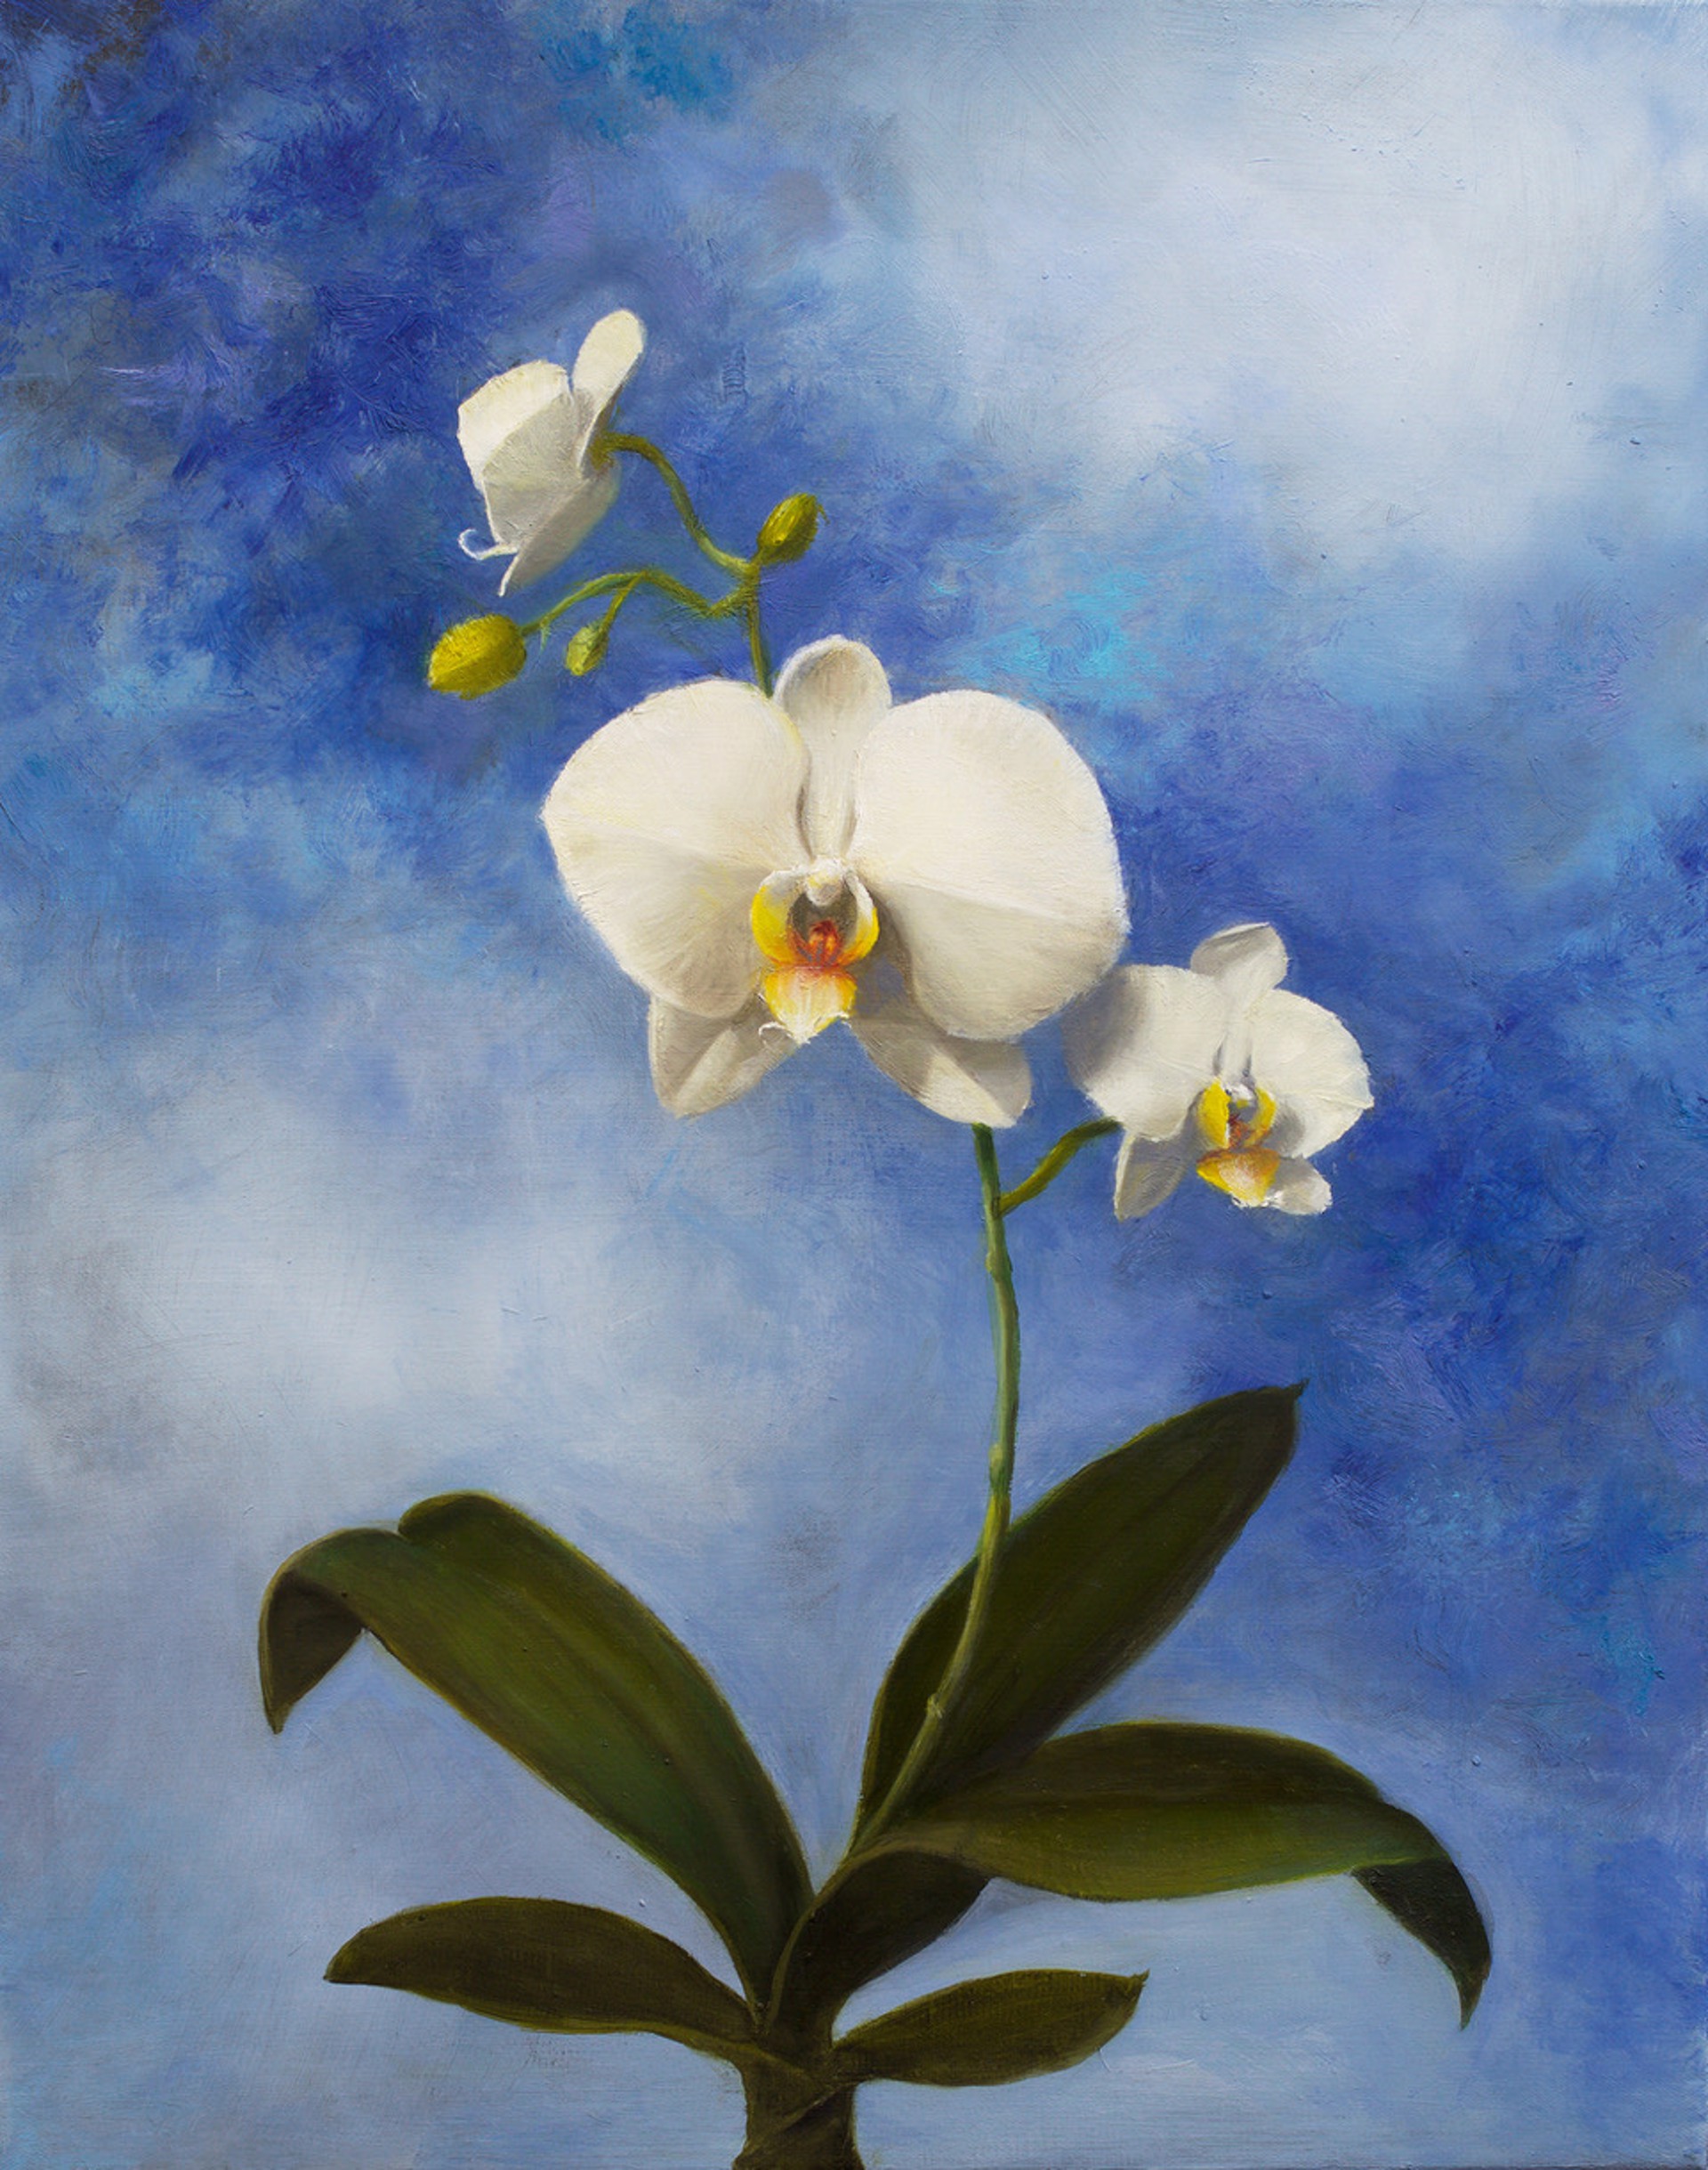 Heavenly Orchid by Patt Baldino